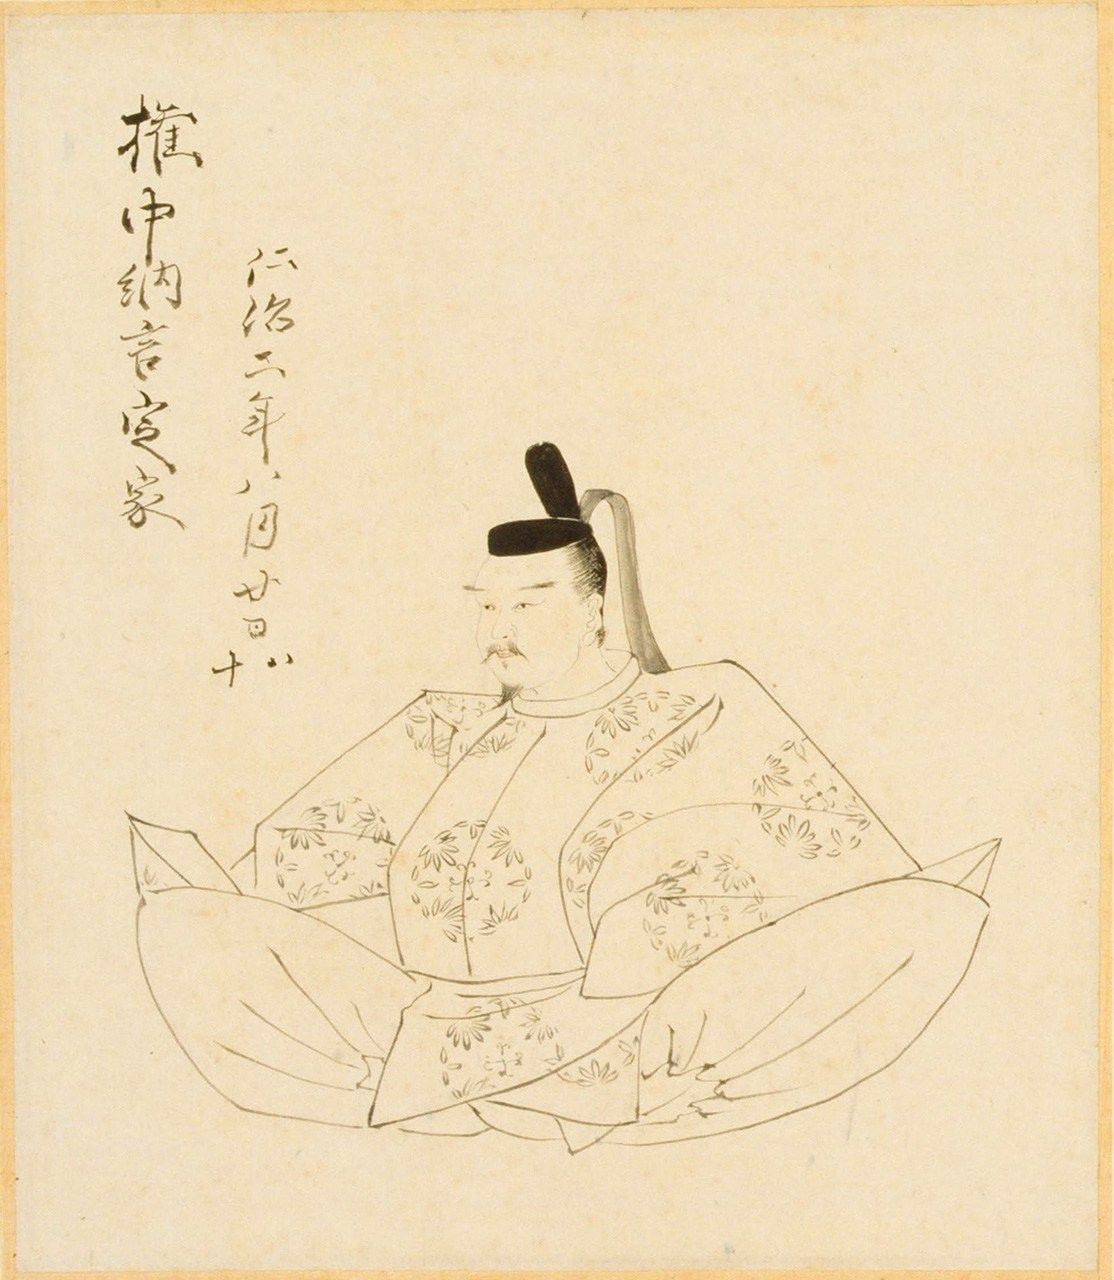 صورة لفوجيوارا نو تيئيكا بقلم كوريهارا نوبوميتسو (الصورة بإذن من مكتبة البرلمان القومية).      